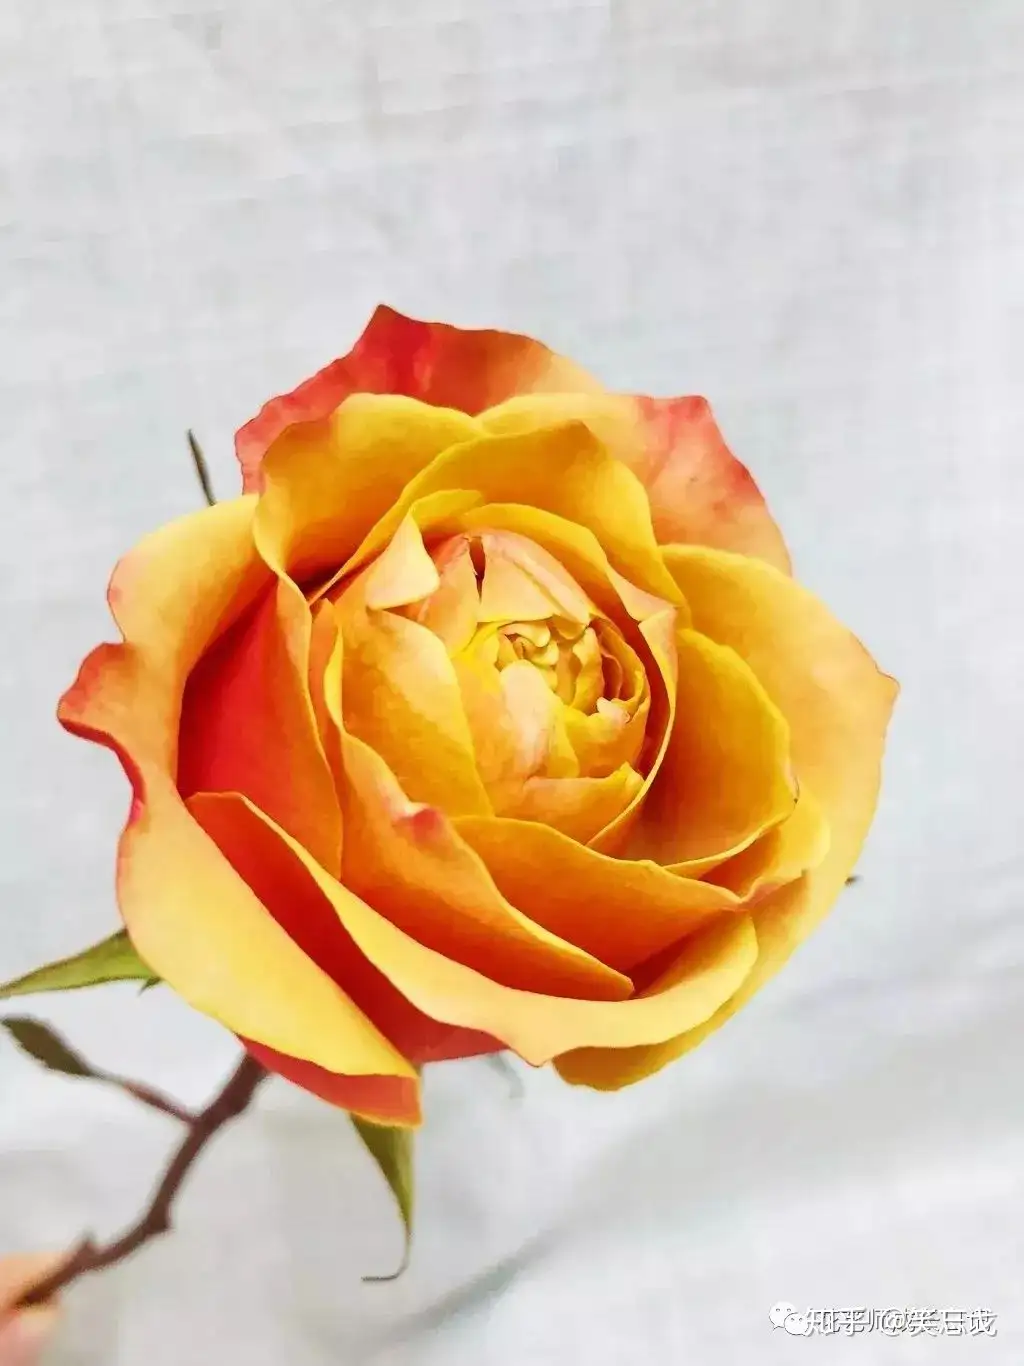 10种黄色玫瑰品种 每一种都是最明媚灿烂的颜色 知乎